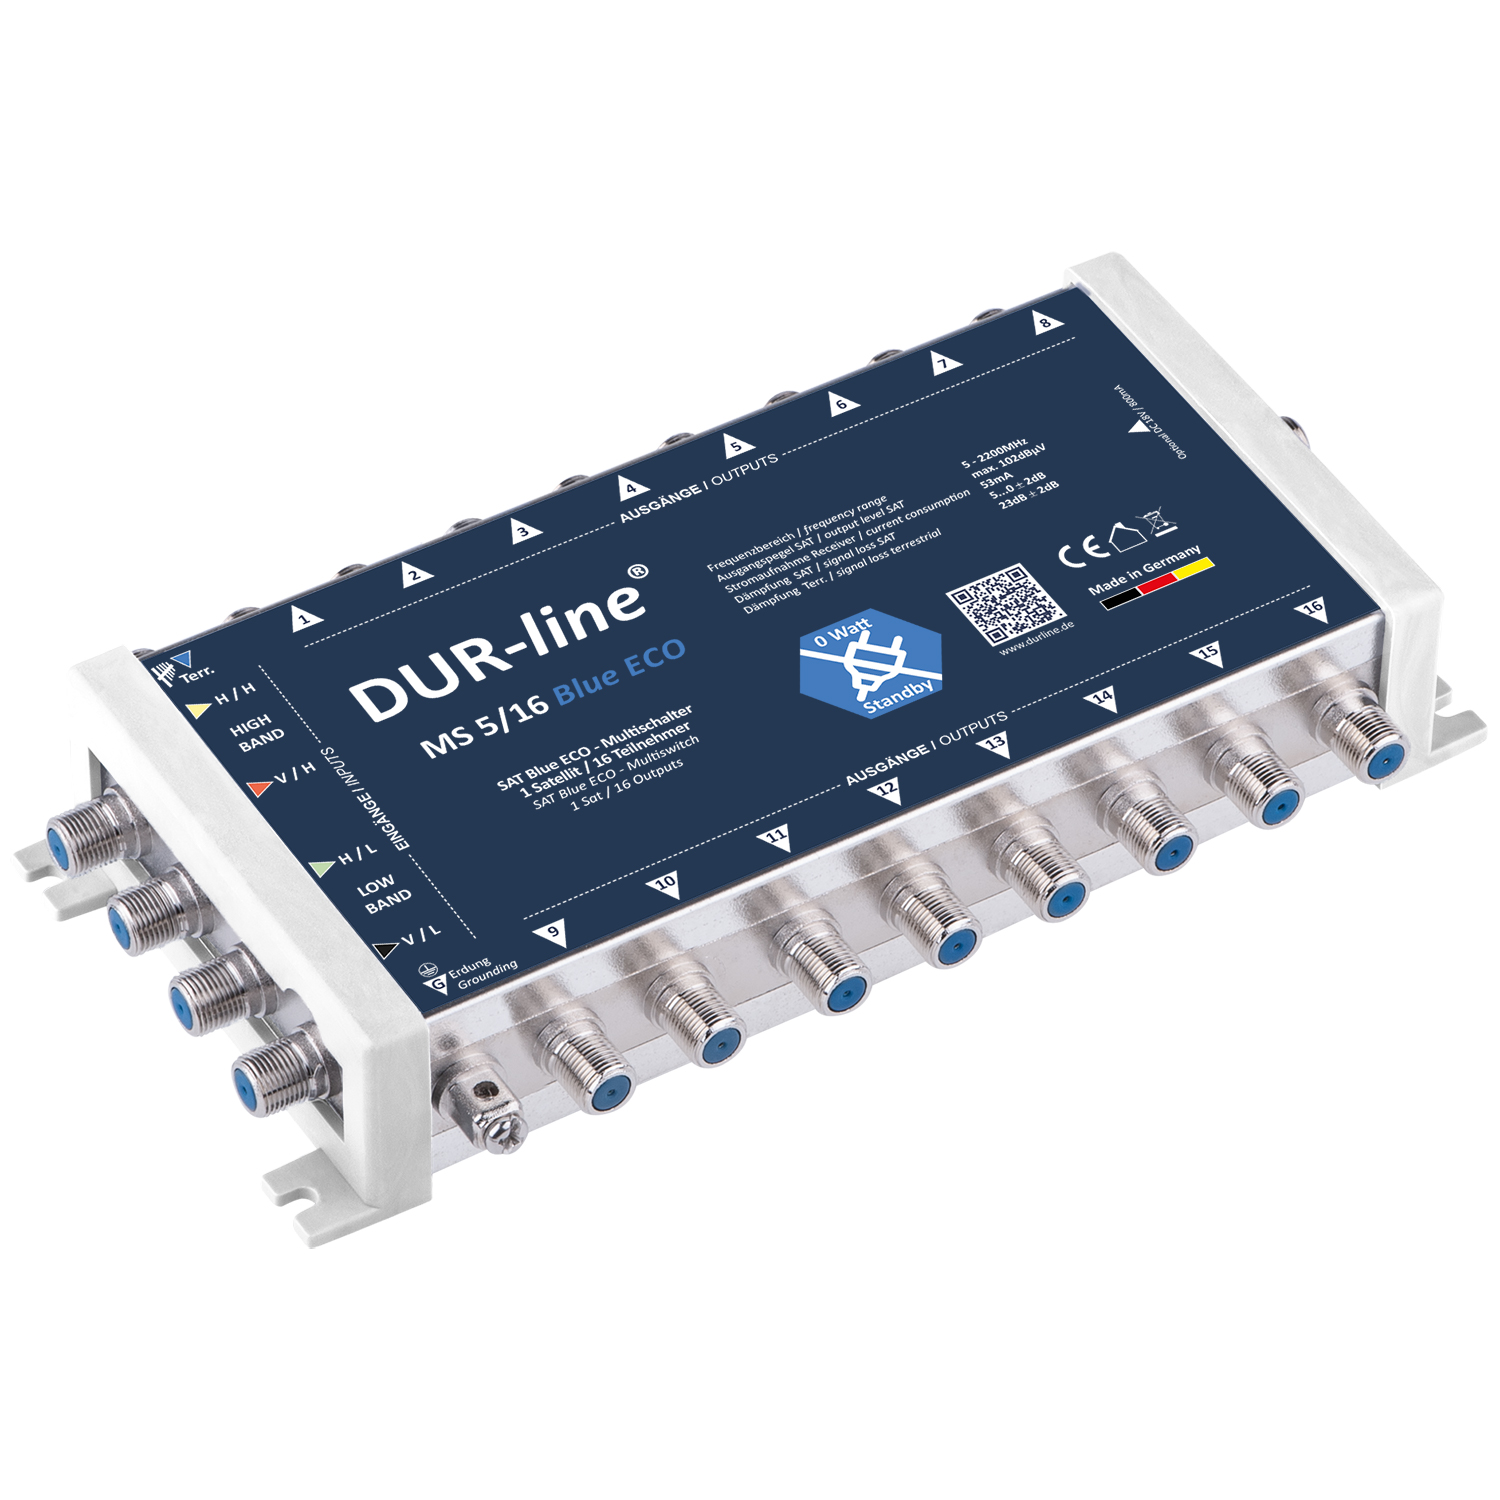 Multischalter 5/16 - DUR-line Blue eco Stromspar für 16 Teilnehmer kein Netzteil notwendig - 0 Watt Standby Multiswitch [Digital HDTV FullHD 4K UHD]